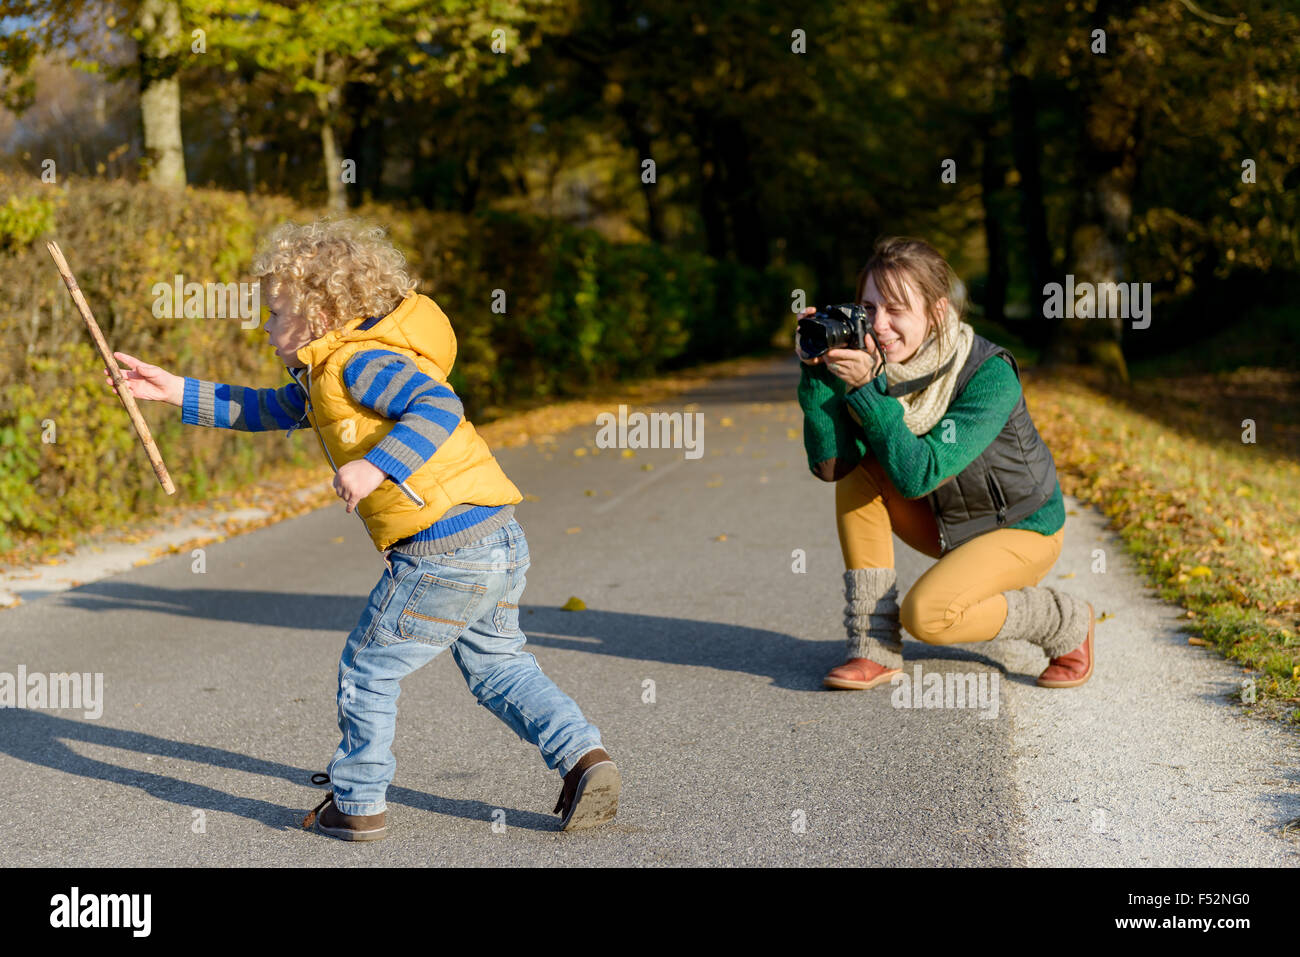 Allegro madre prendendo le foto di lei carino piccolo figlio nel parco, felice famiglia giovane avendo divertimento all'aperto, amore parentale e enj Foto Stock